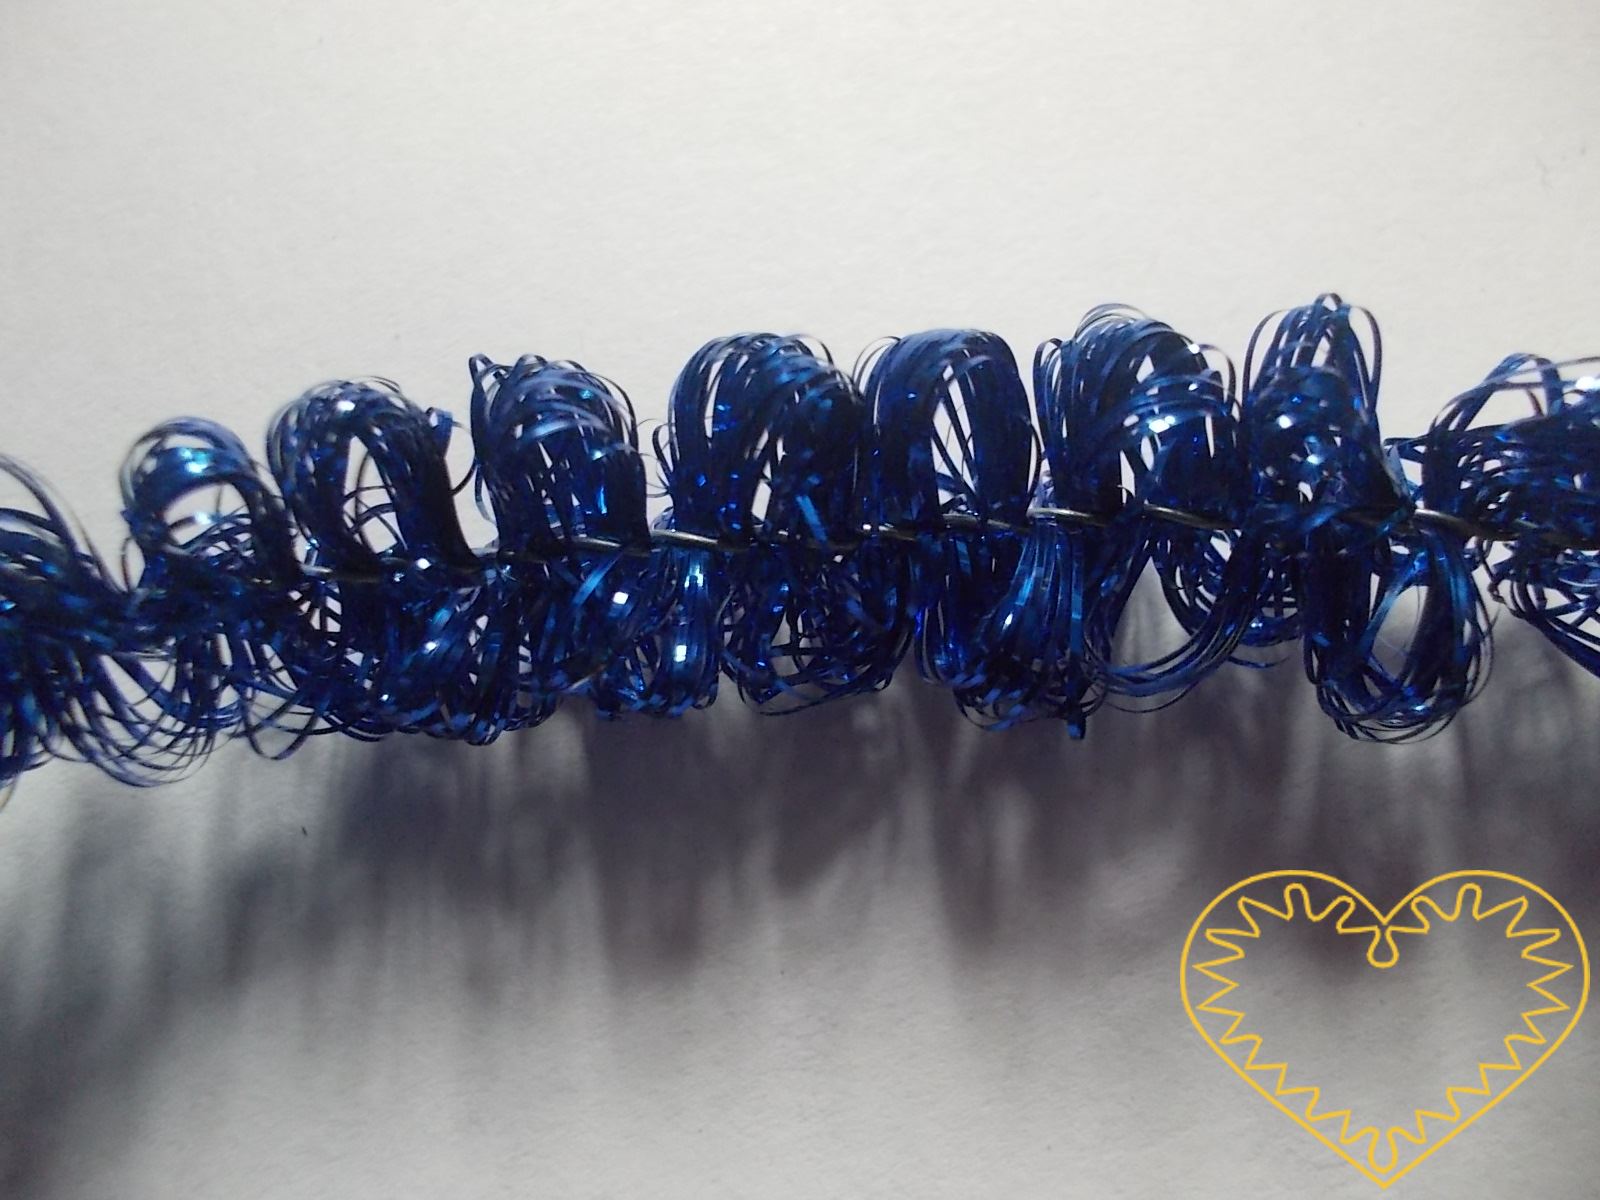 Modrá žinylka s drátkem Ø 1 cm, délka 4 m. Díky tomu, že kostru tvoří drátek, dá se tato žinylka různě ohýbat a dobře drží tvar. Najde široké uplatnění při nejrůznějších tvůrčích činnostech.